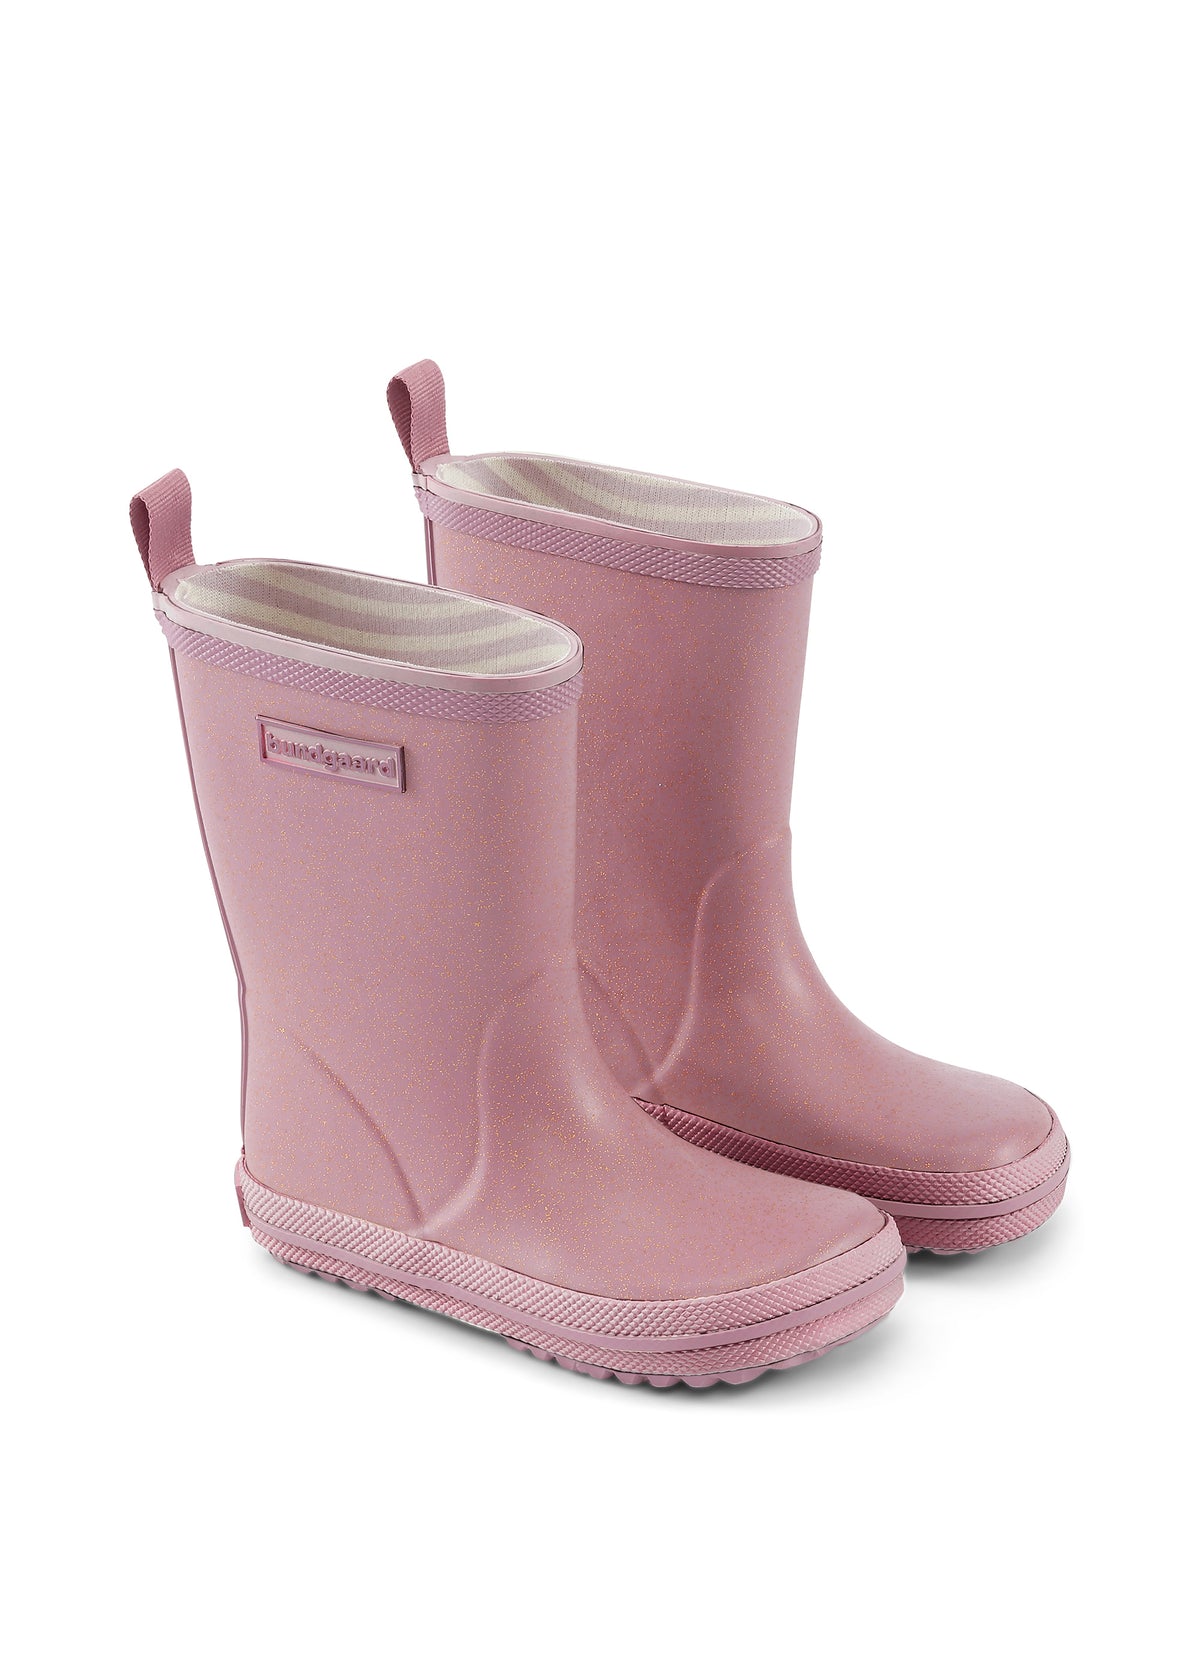 Rubber boots - pink glitter, Bundgaard Zero Heel